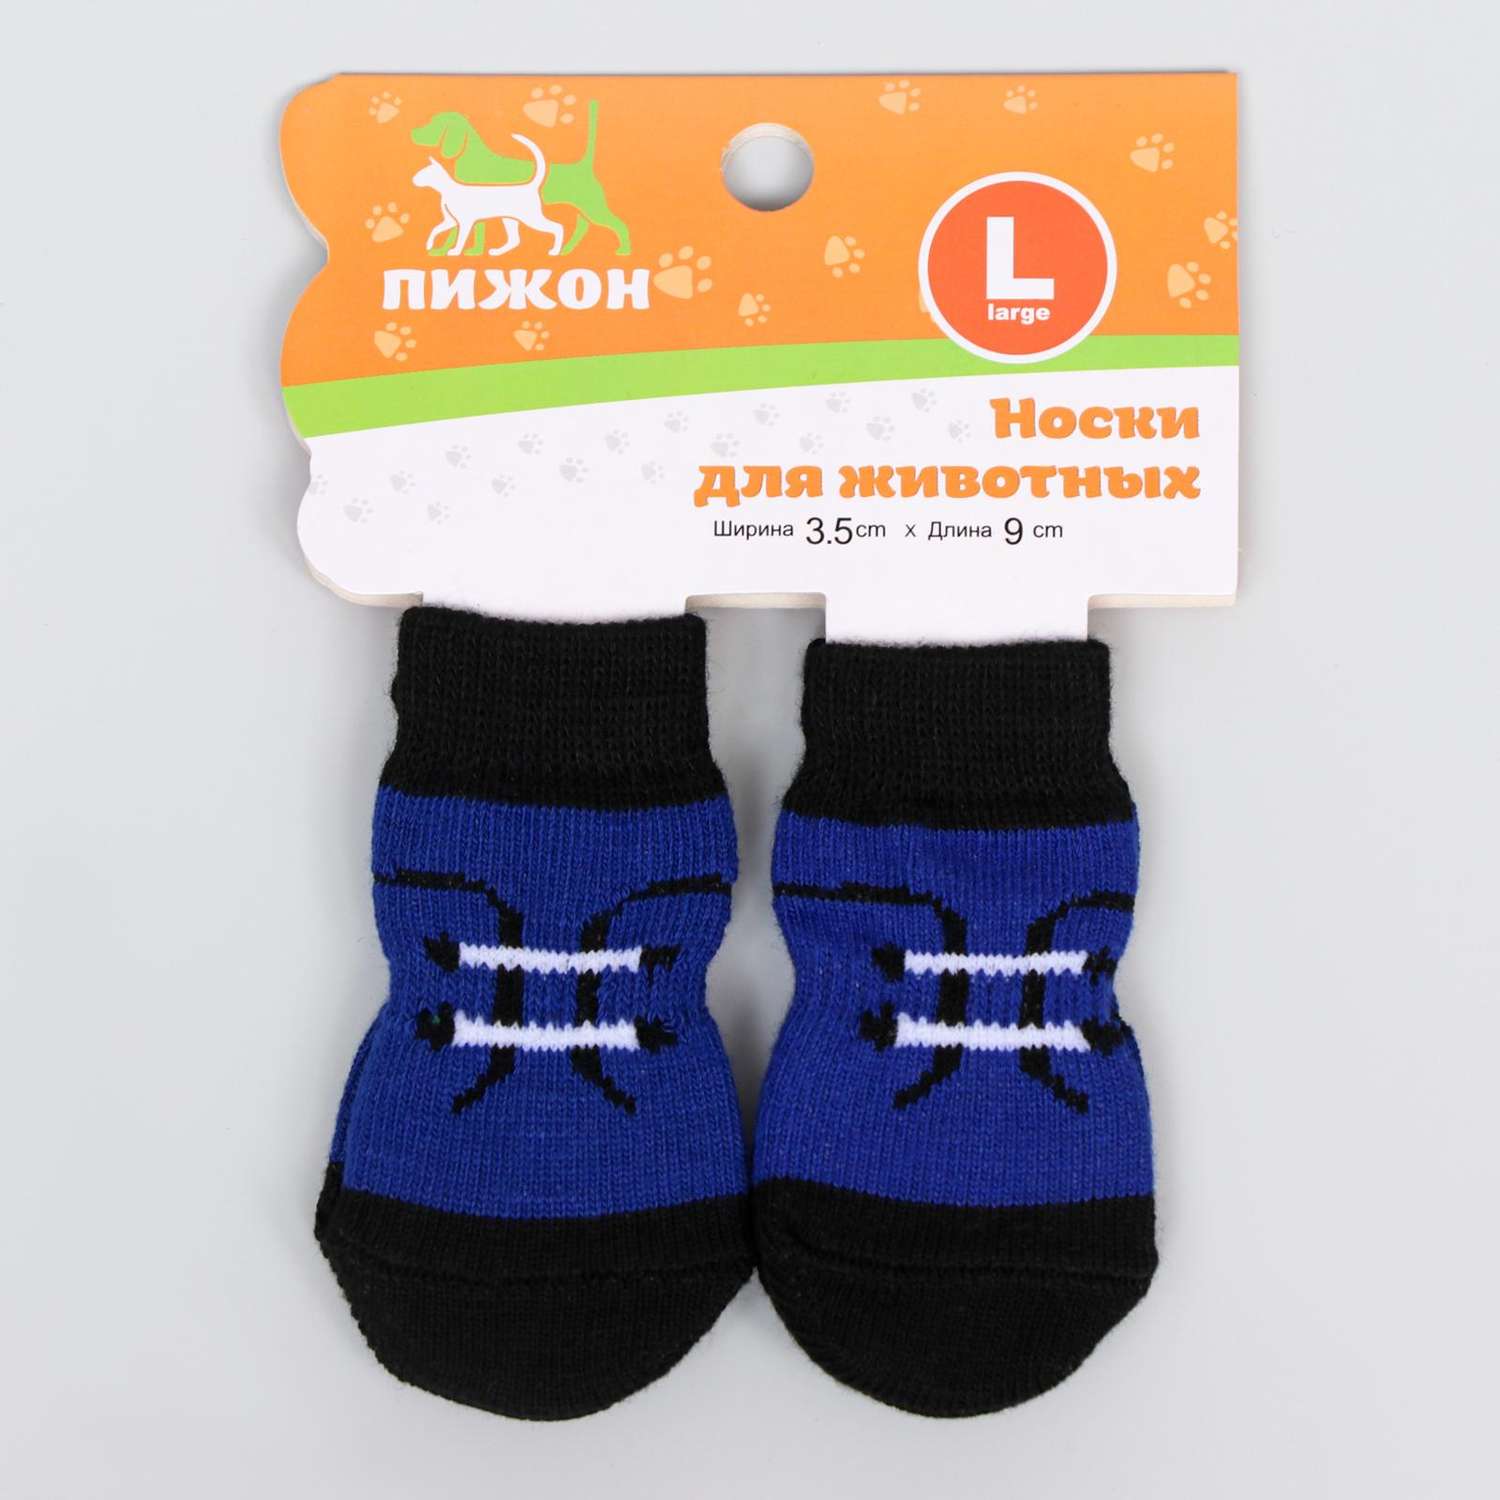 Носки нескользящие Пижон «Шнурки» размер L 4 шт - фото 2